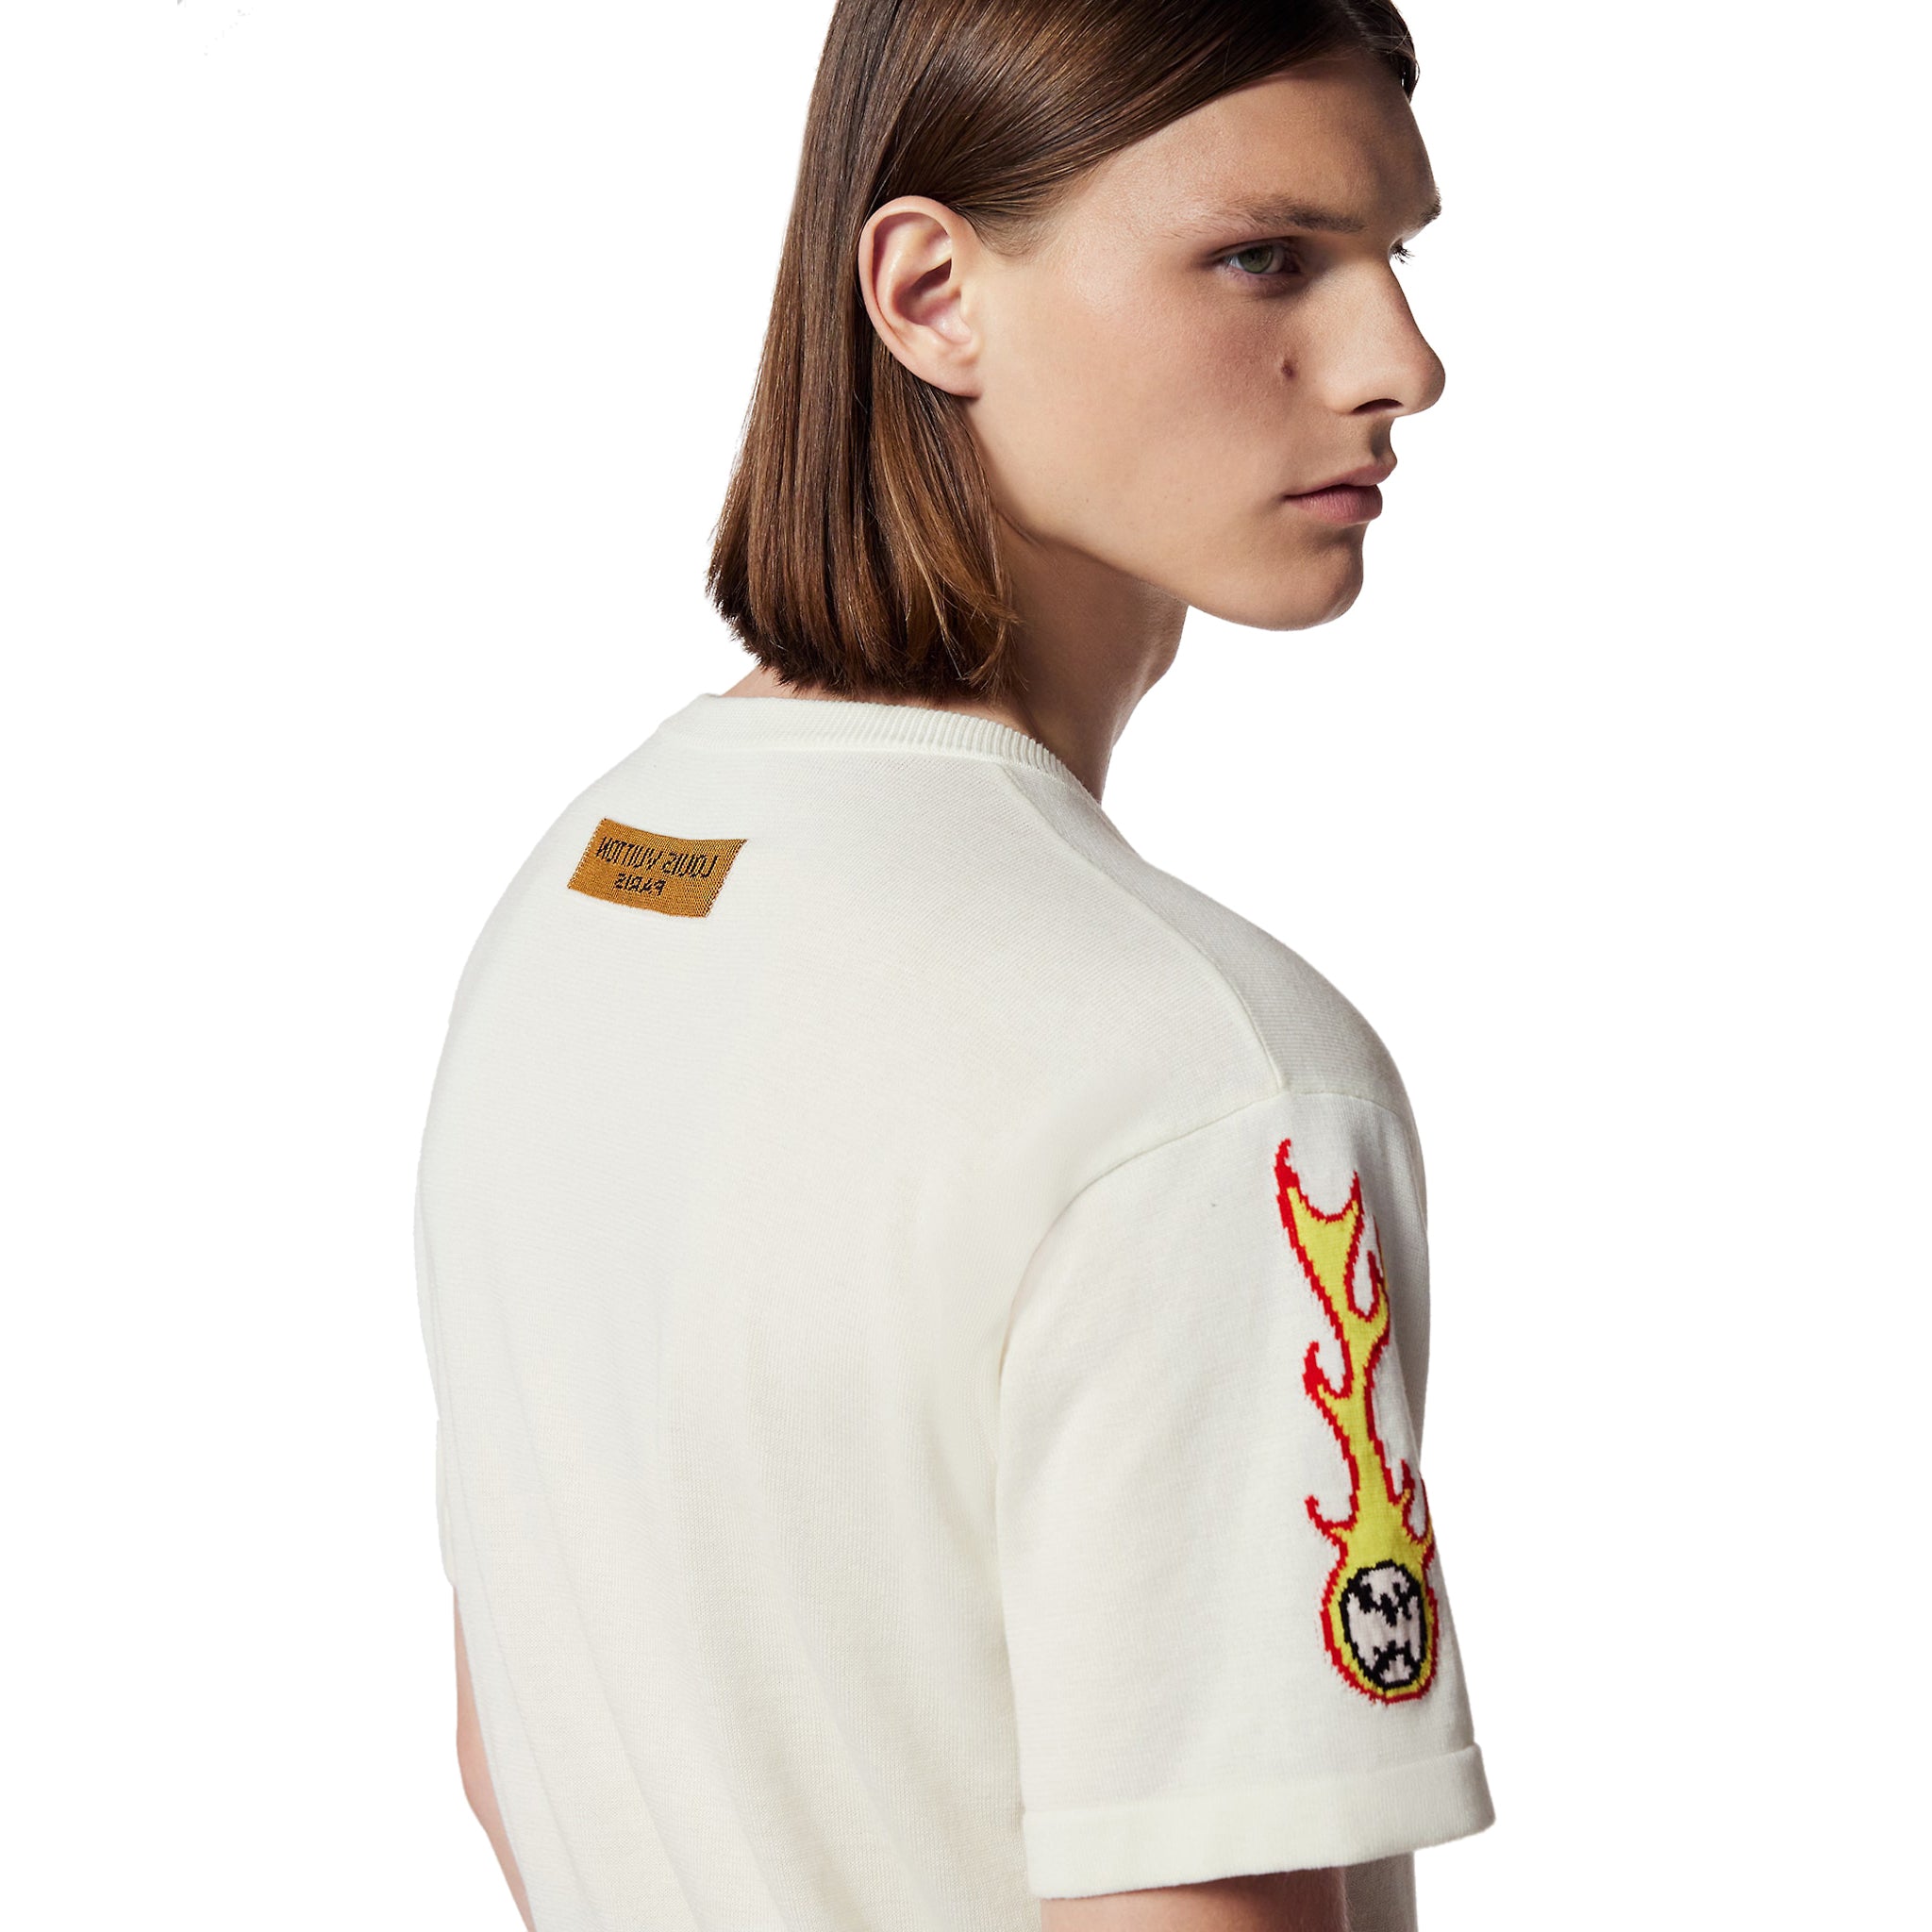 Cheap Brown Louis Vuitton Polo Shirt Mens, LV Polo T Shirt - Rosesy